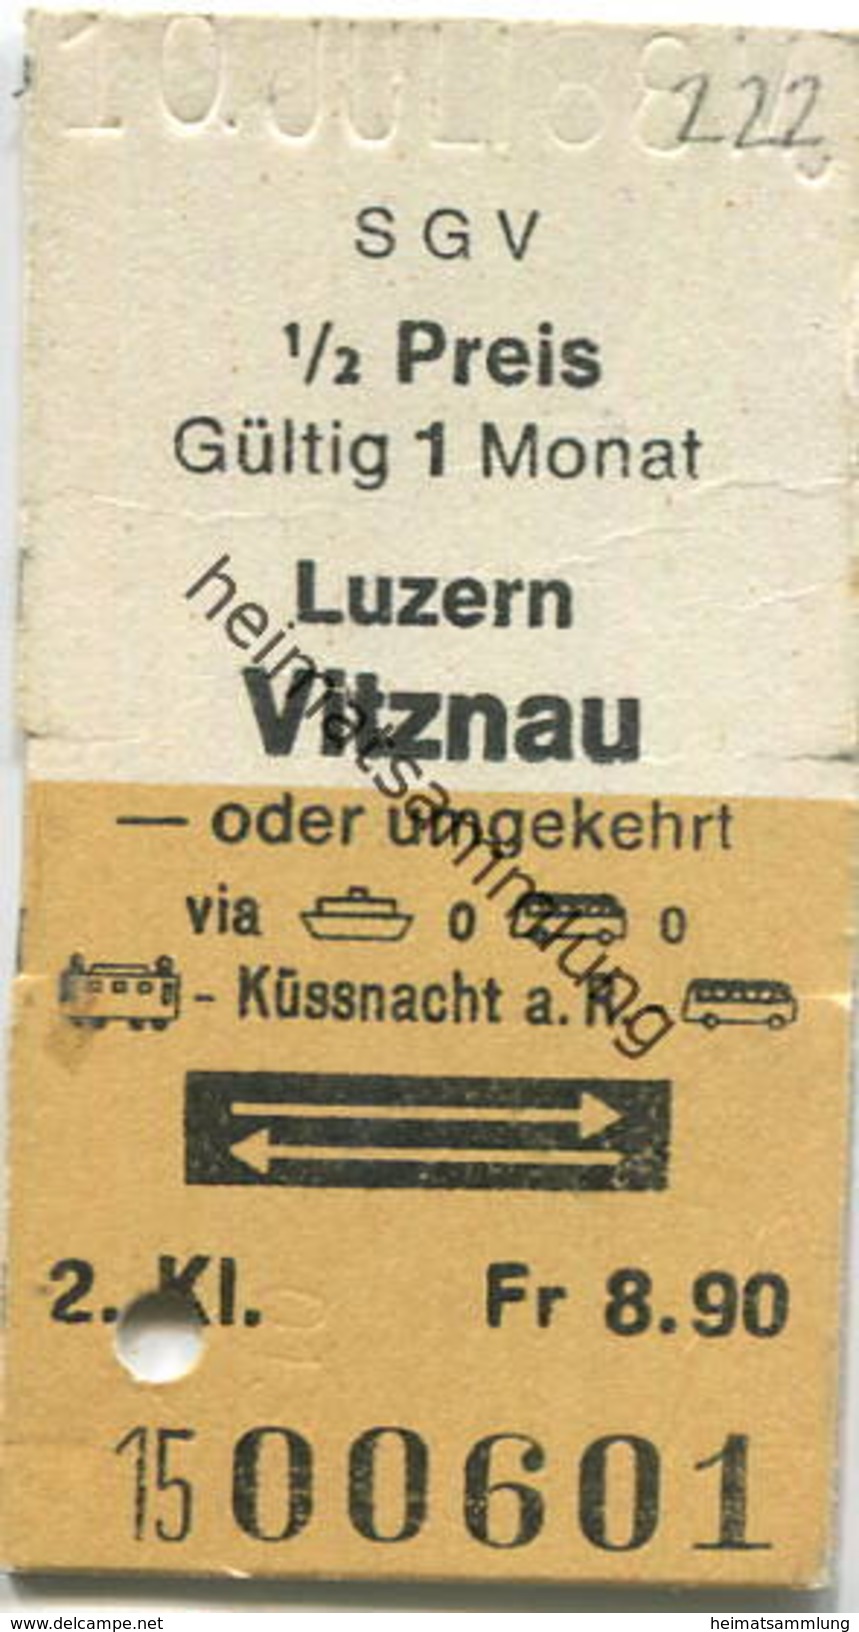 Schweiz - SGV Schifffahrtsgesellschaft Des Vierwaldstättersees - Luzern Vitznau Oder Umgekehrt - Fahrkarte 1988 - Europe